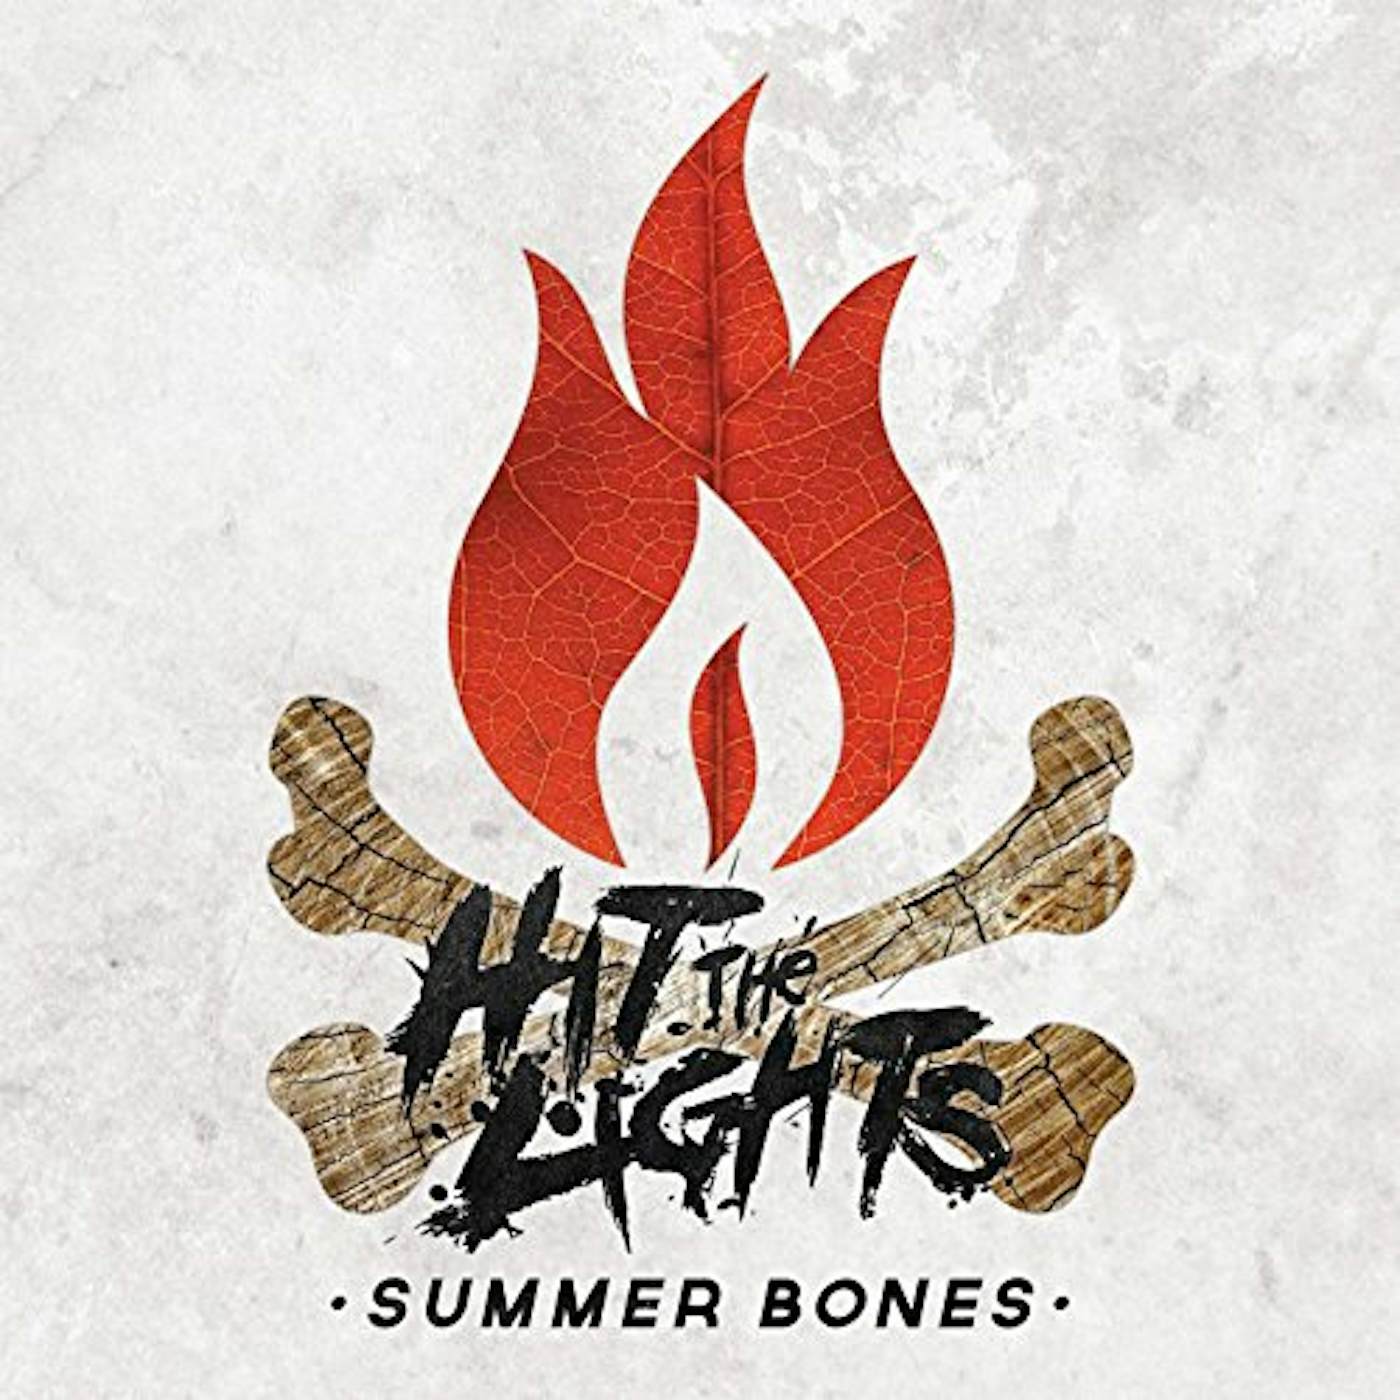 Hit The Lights Summer Bones Vinyl Record